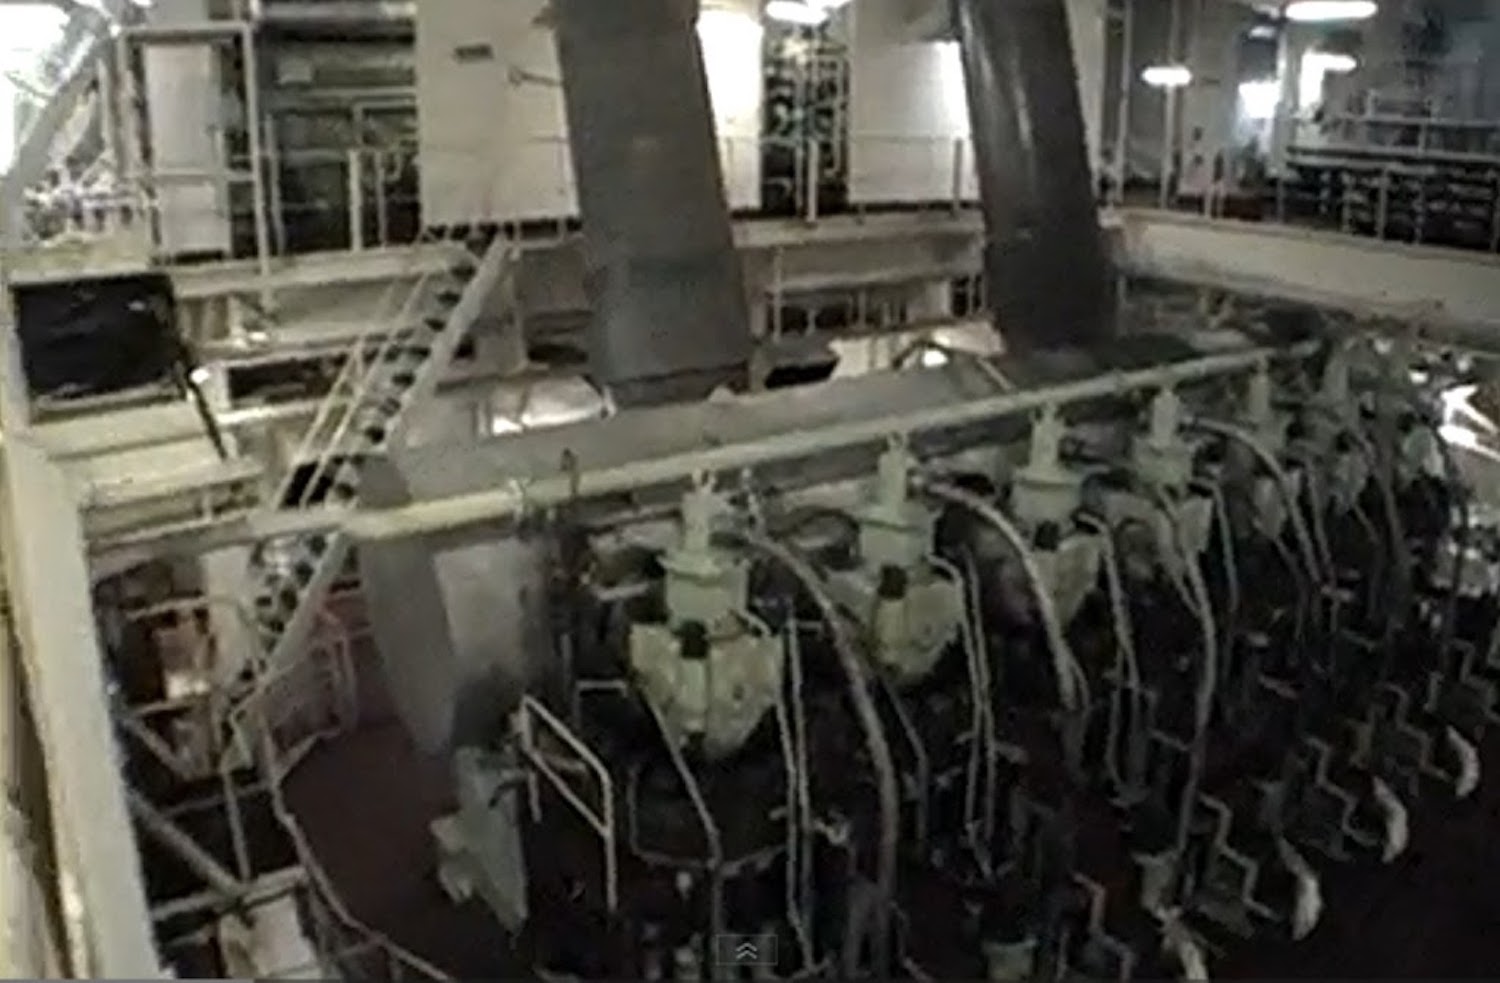 Ξενάγηση στο μηχανοστάσιο ενός δεξαμενόπλοιου (Video) - e-Nautilia.gr | Το Ελληνικό Portal για την Ναυτιλία. Τελευταία νέα, άρθρα, Οπτικοακουστικό Υλικό